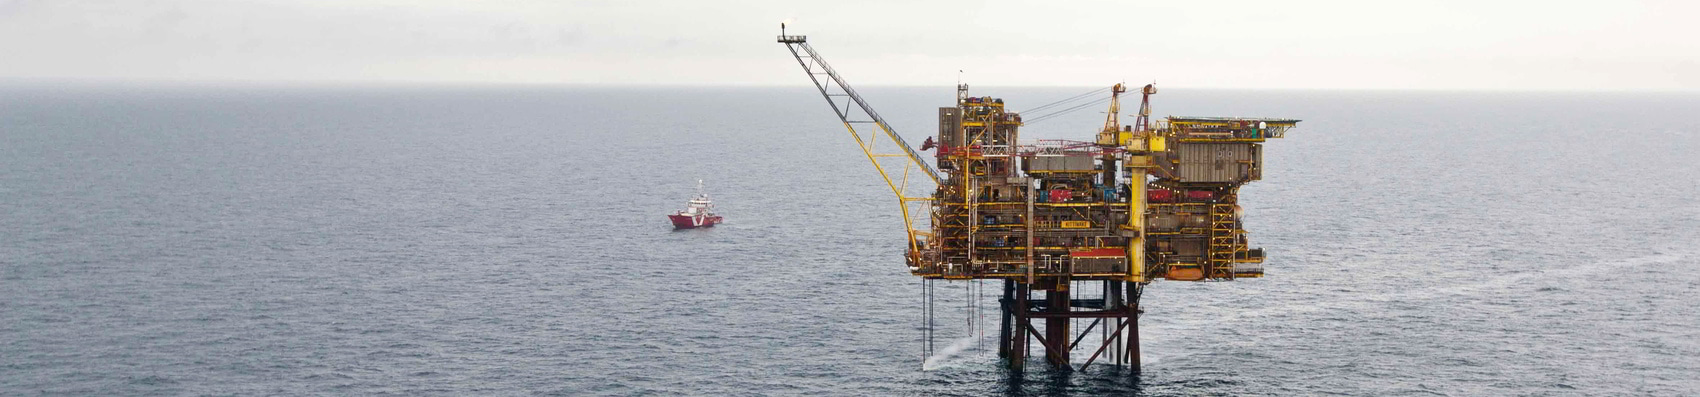 EnQuest prolongs Petrofac’s assignment on North Sea platform